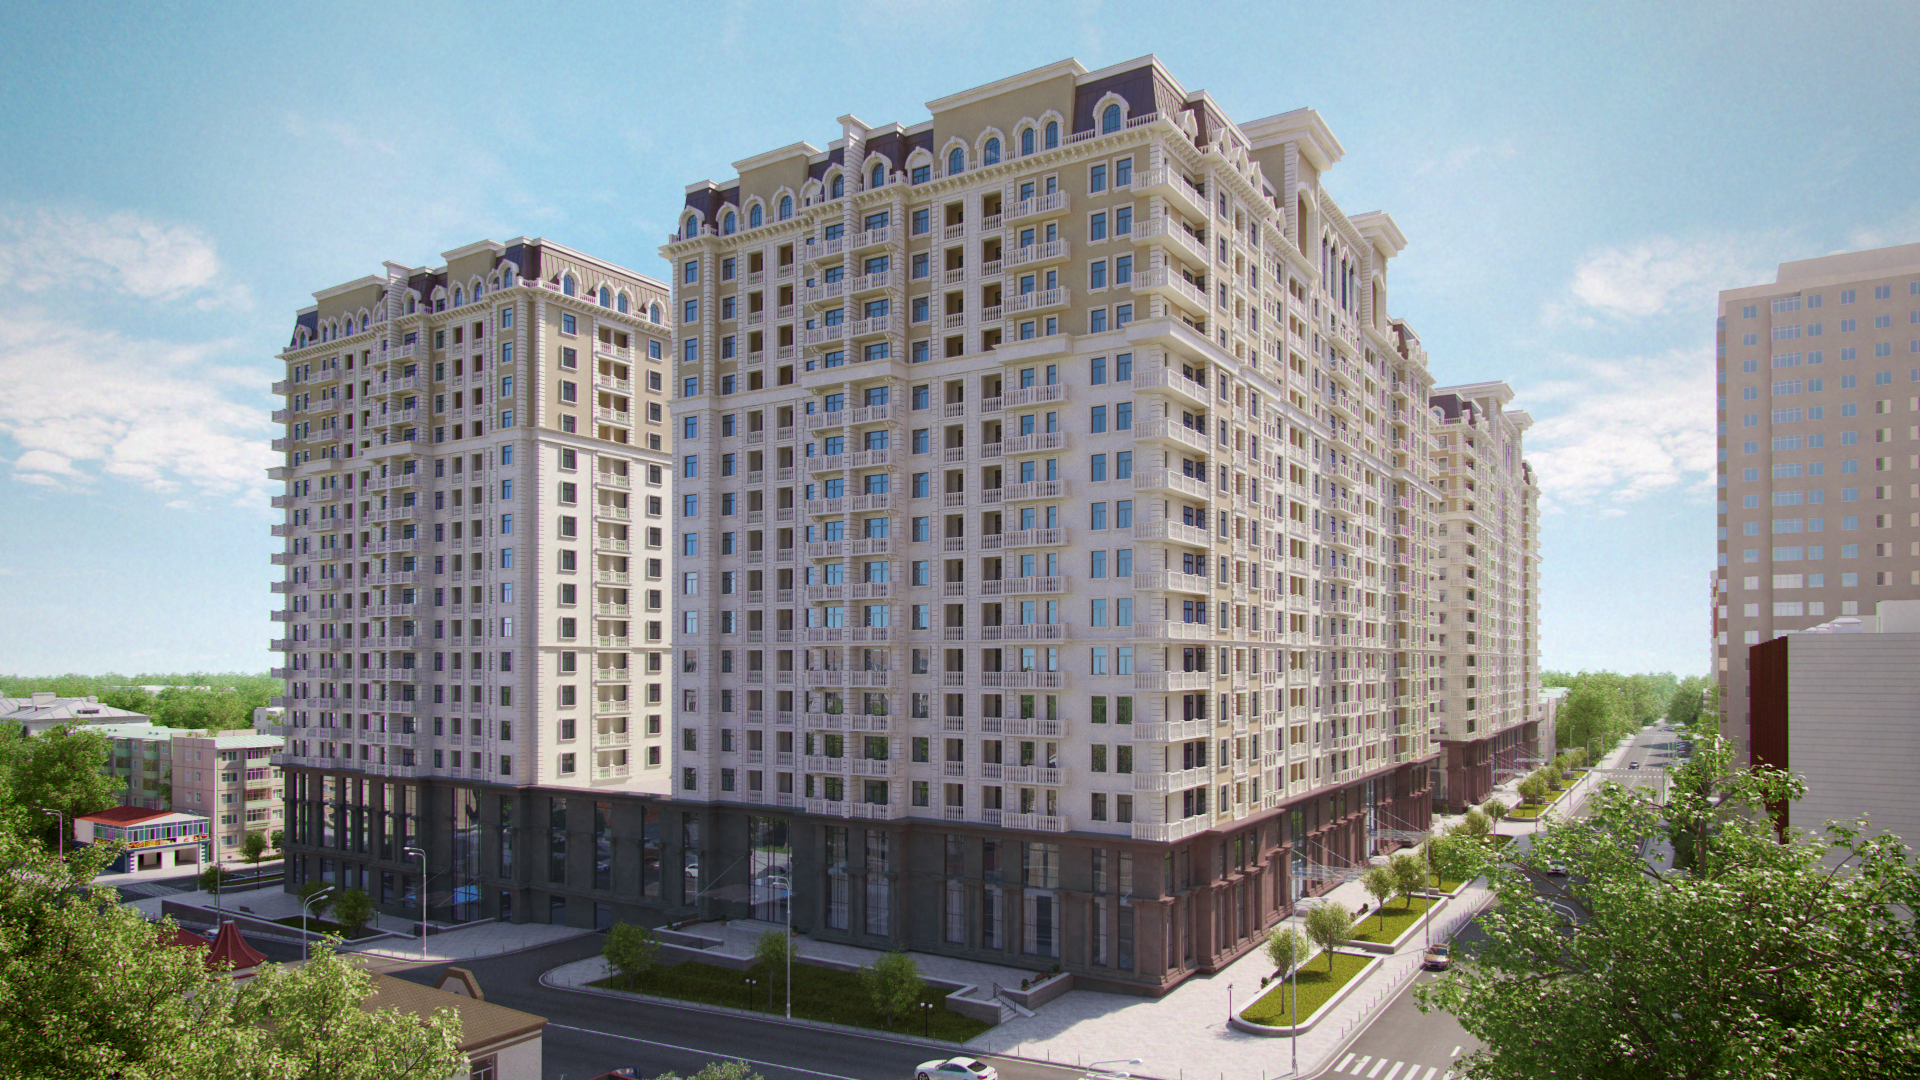 В Баку снизились цены на жилье